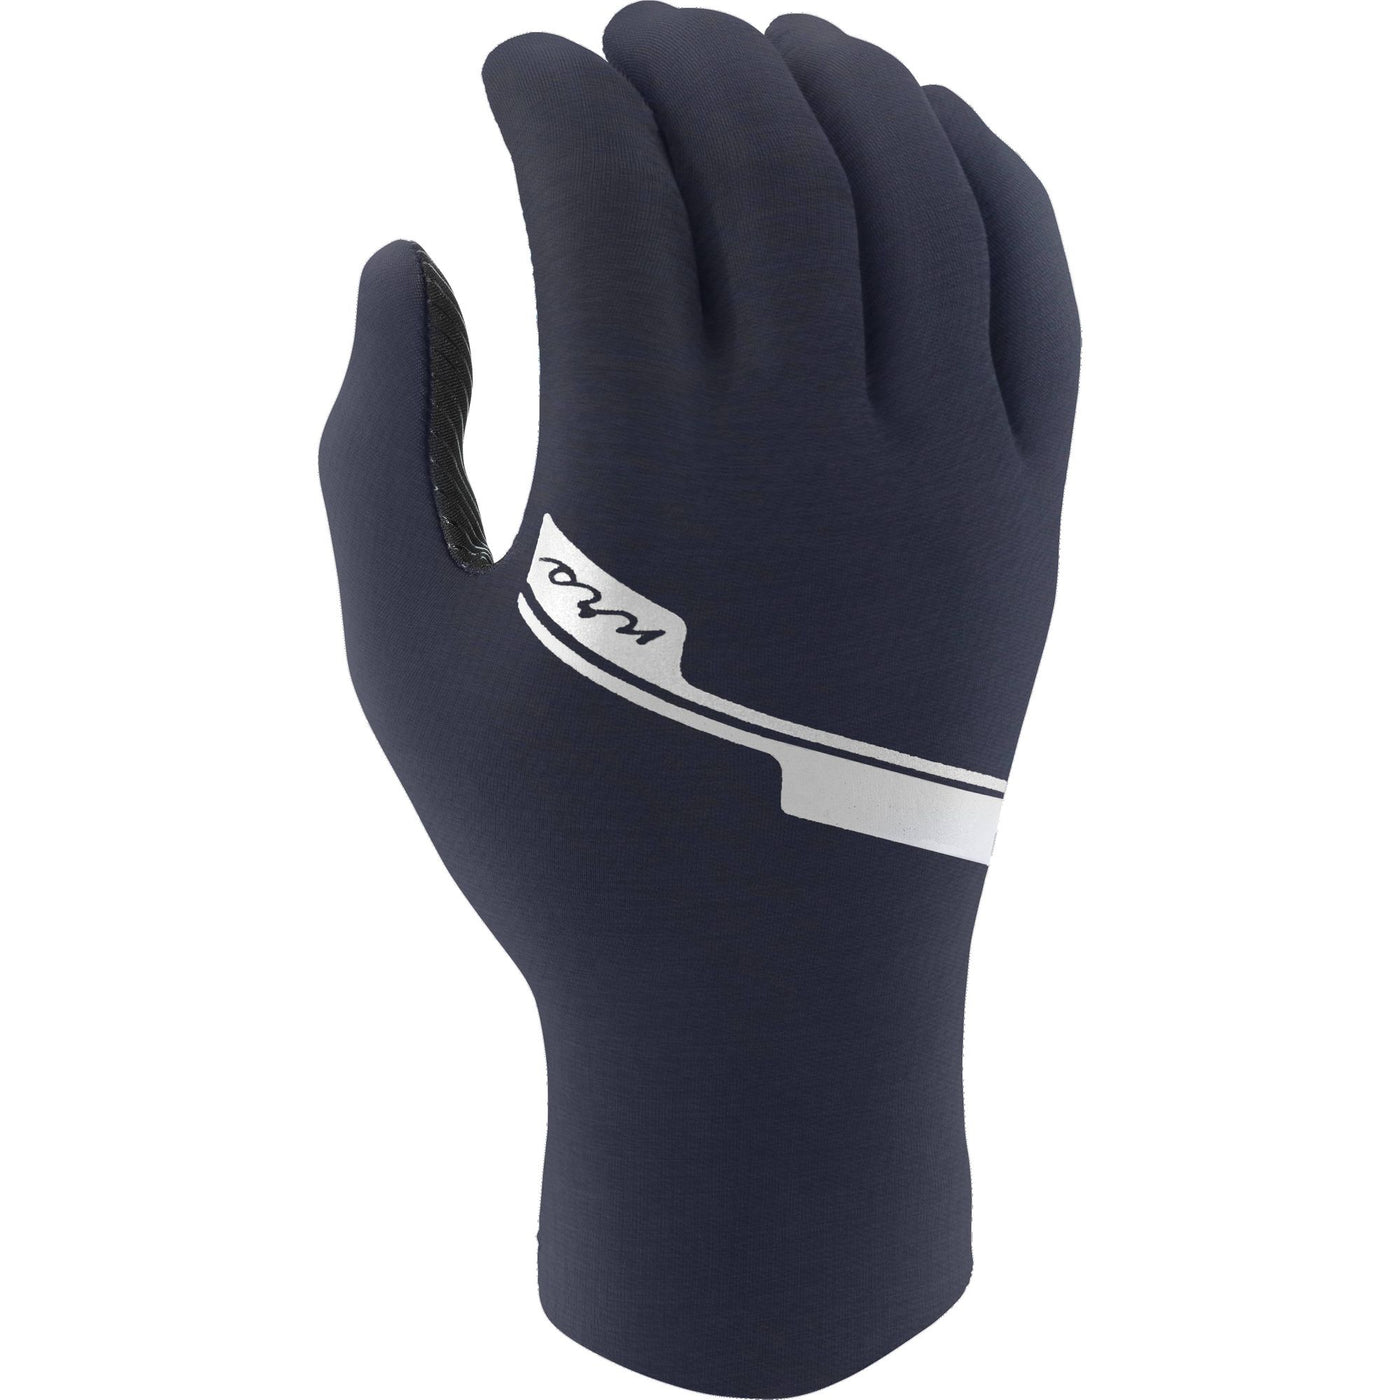 NRS Women's HydroSkin Gloves